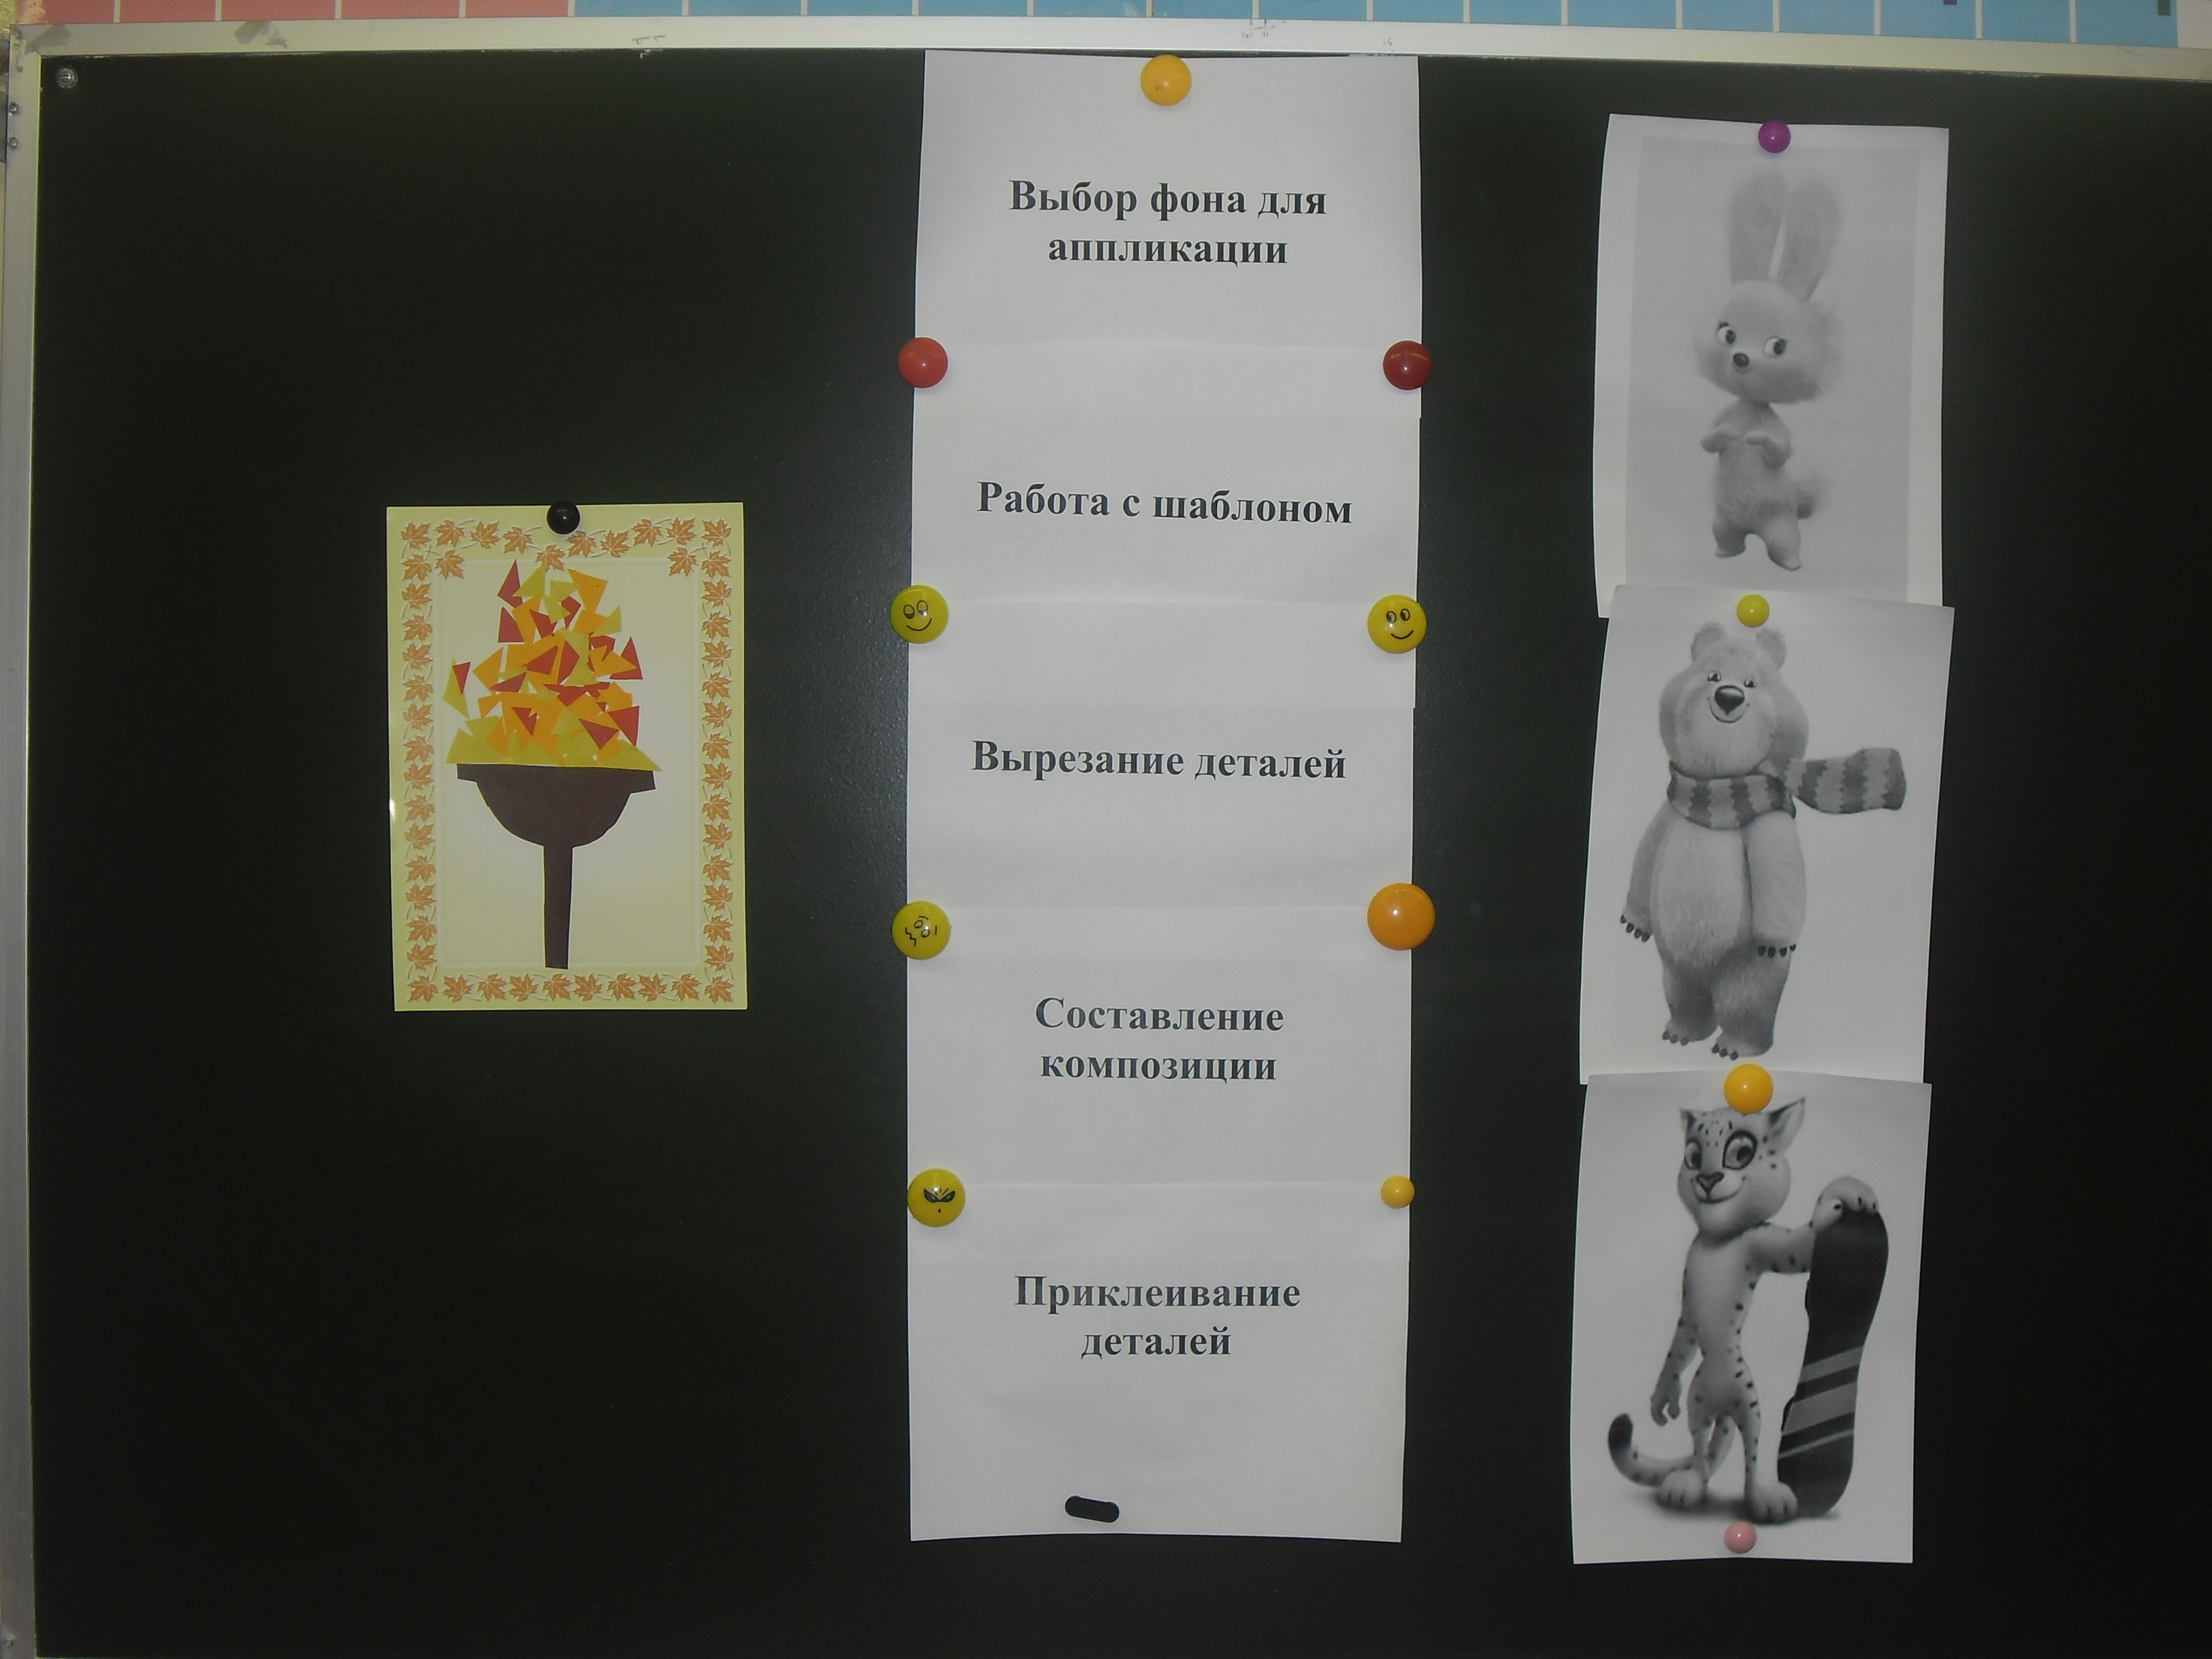 Конспект занятия кружка «Прикладное творчество» в 1 классе (внеурочная деятельность) Тема занятия: Олимпийский огонь. Аппликация из цветной бумаги на основе деталей, выполненных по шаблону